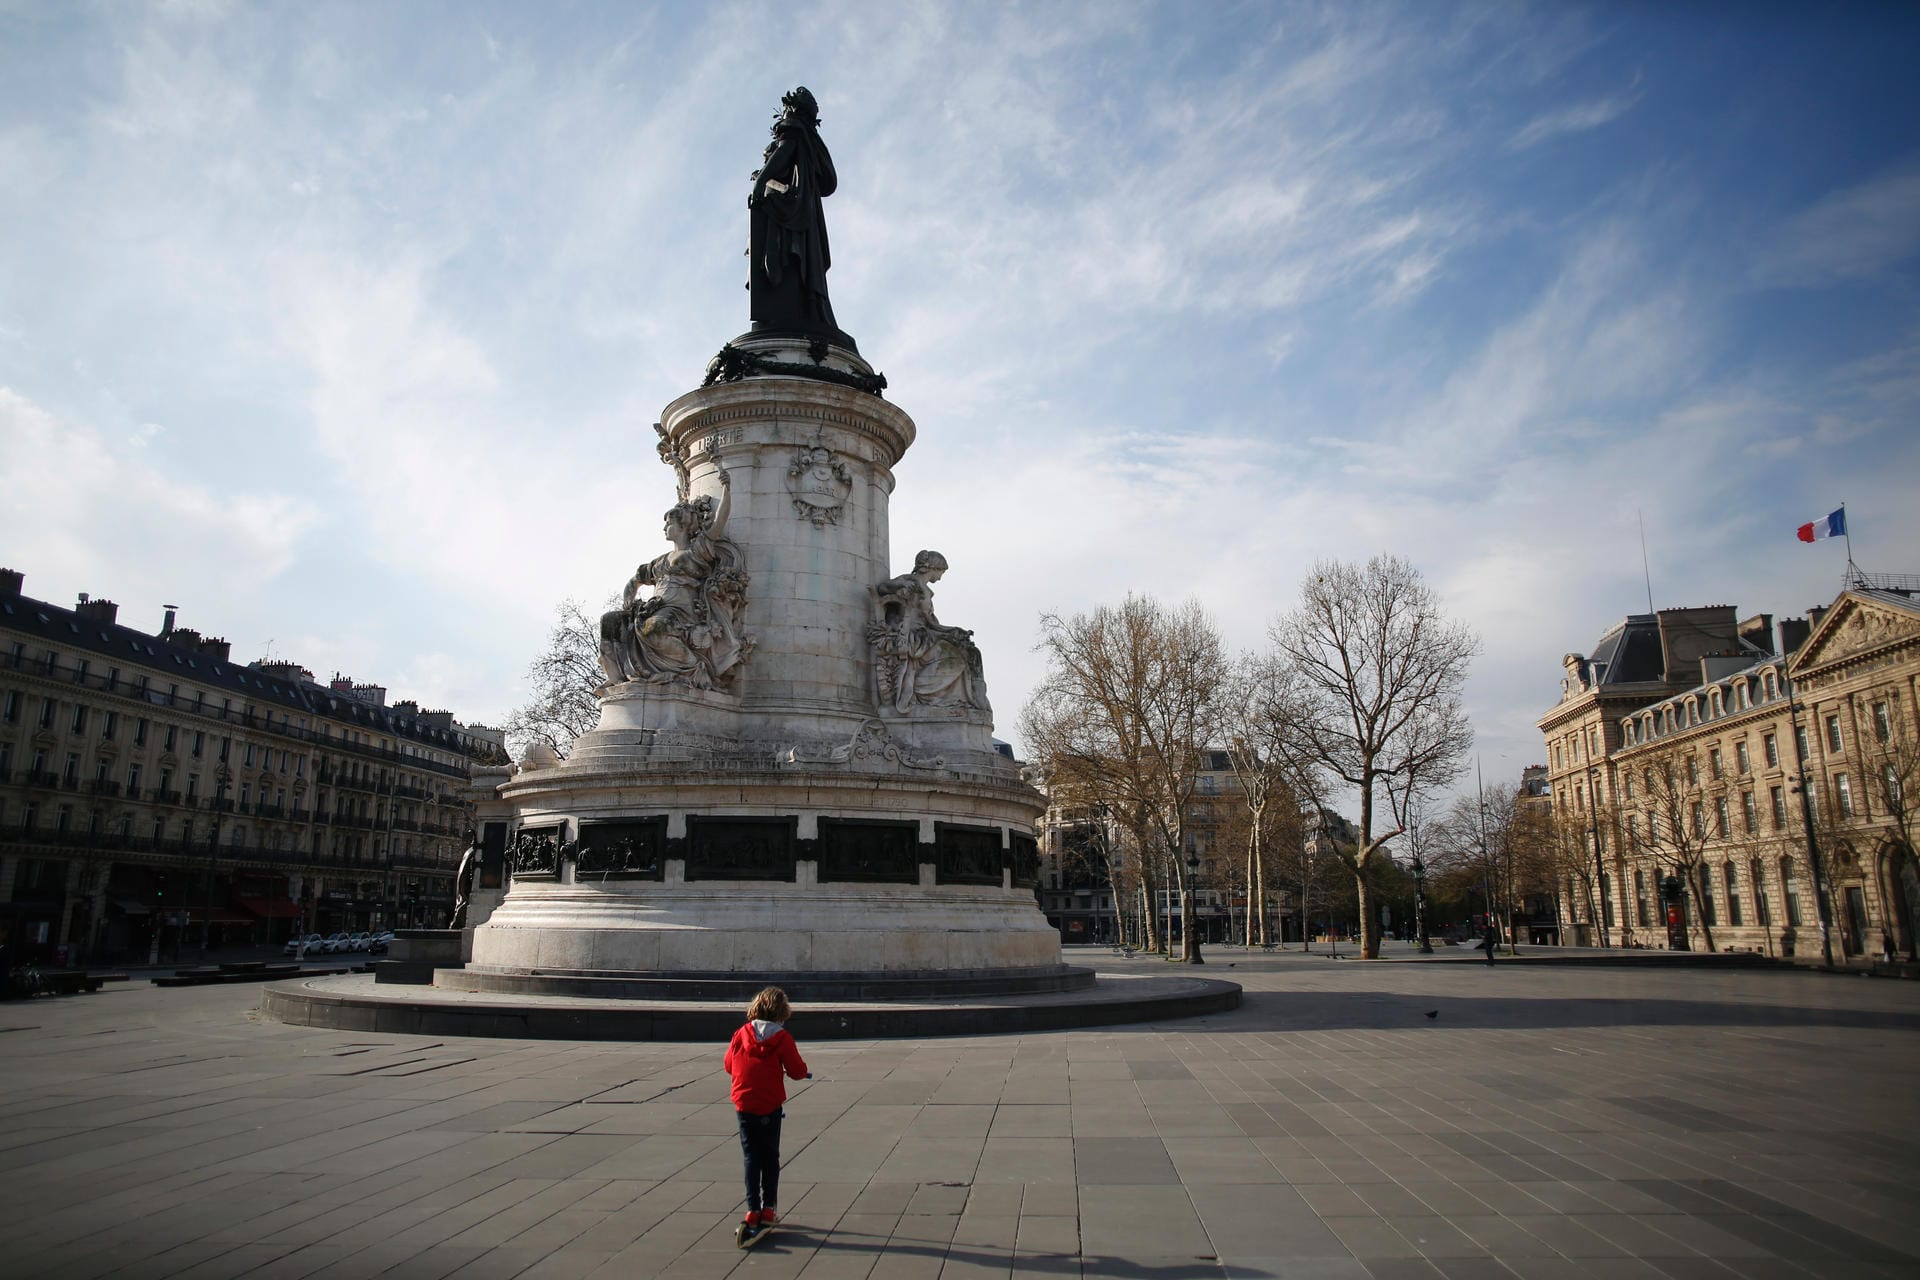 Frankreich, Paris: Ein Kind fährt mit einem Roller auf dem son menschenleeren Platz der Republik.